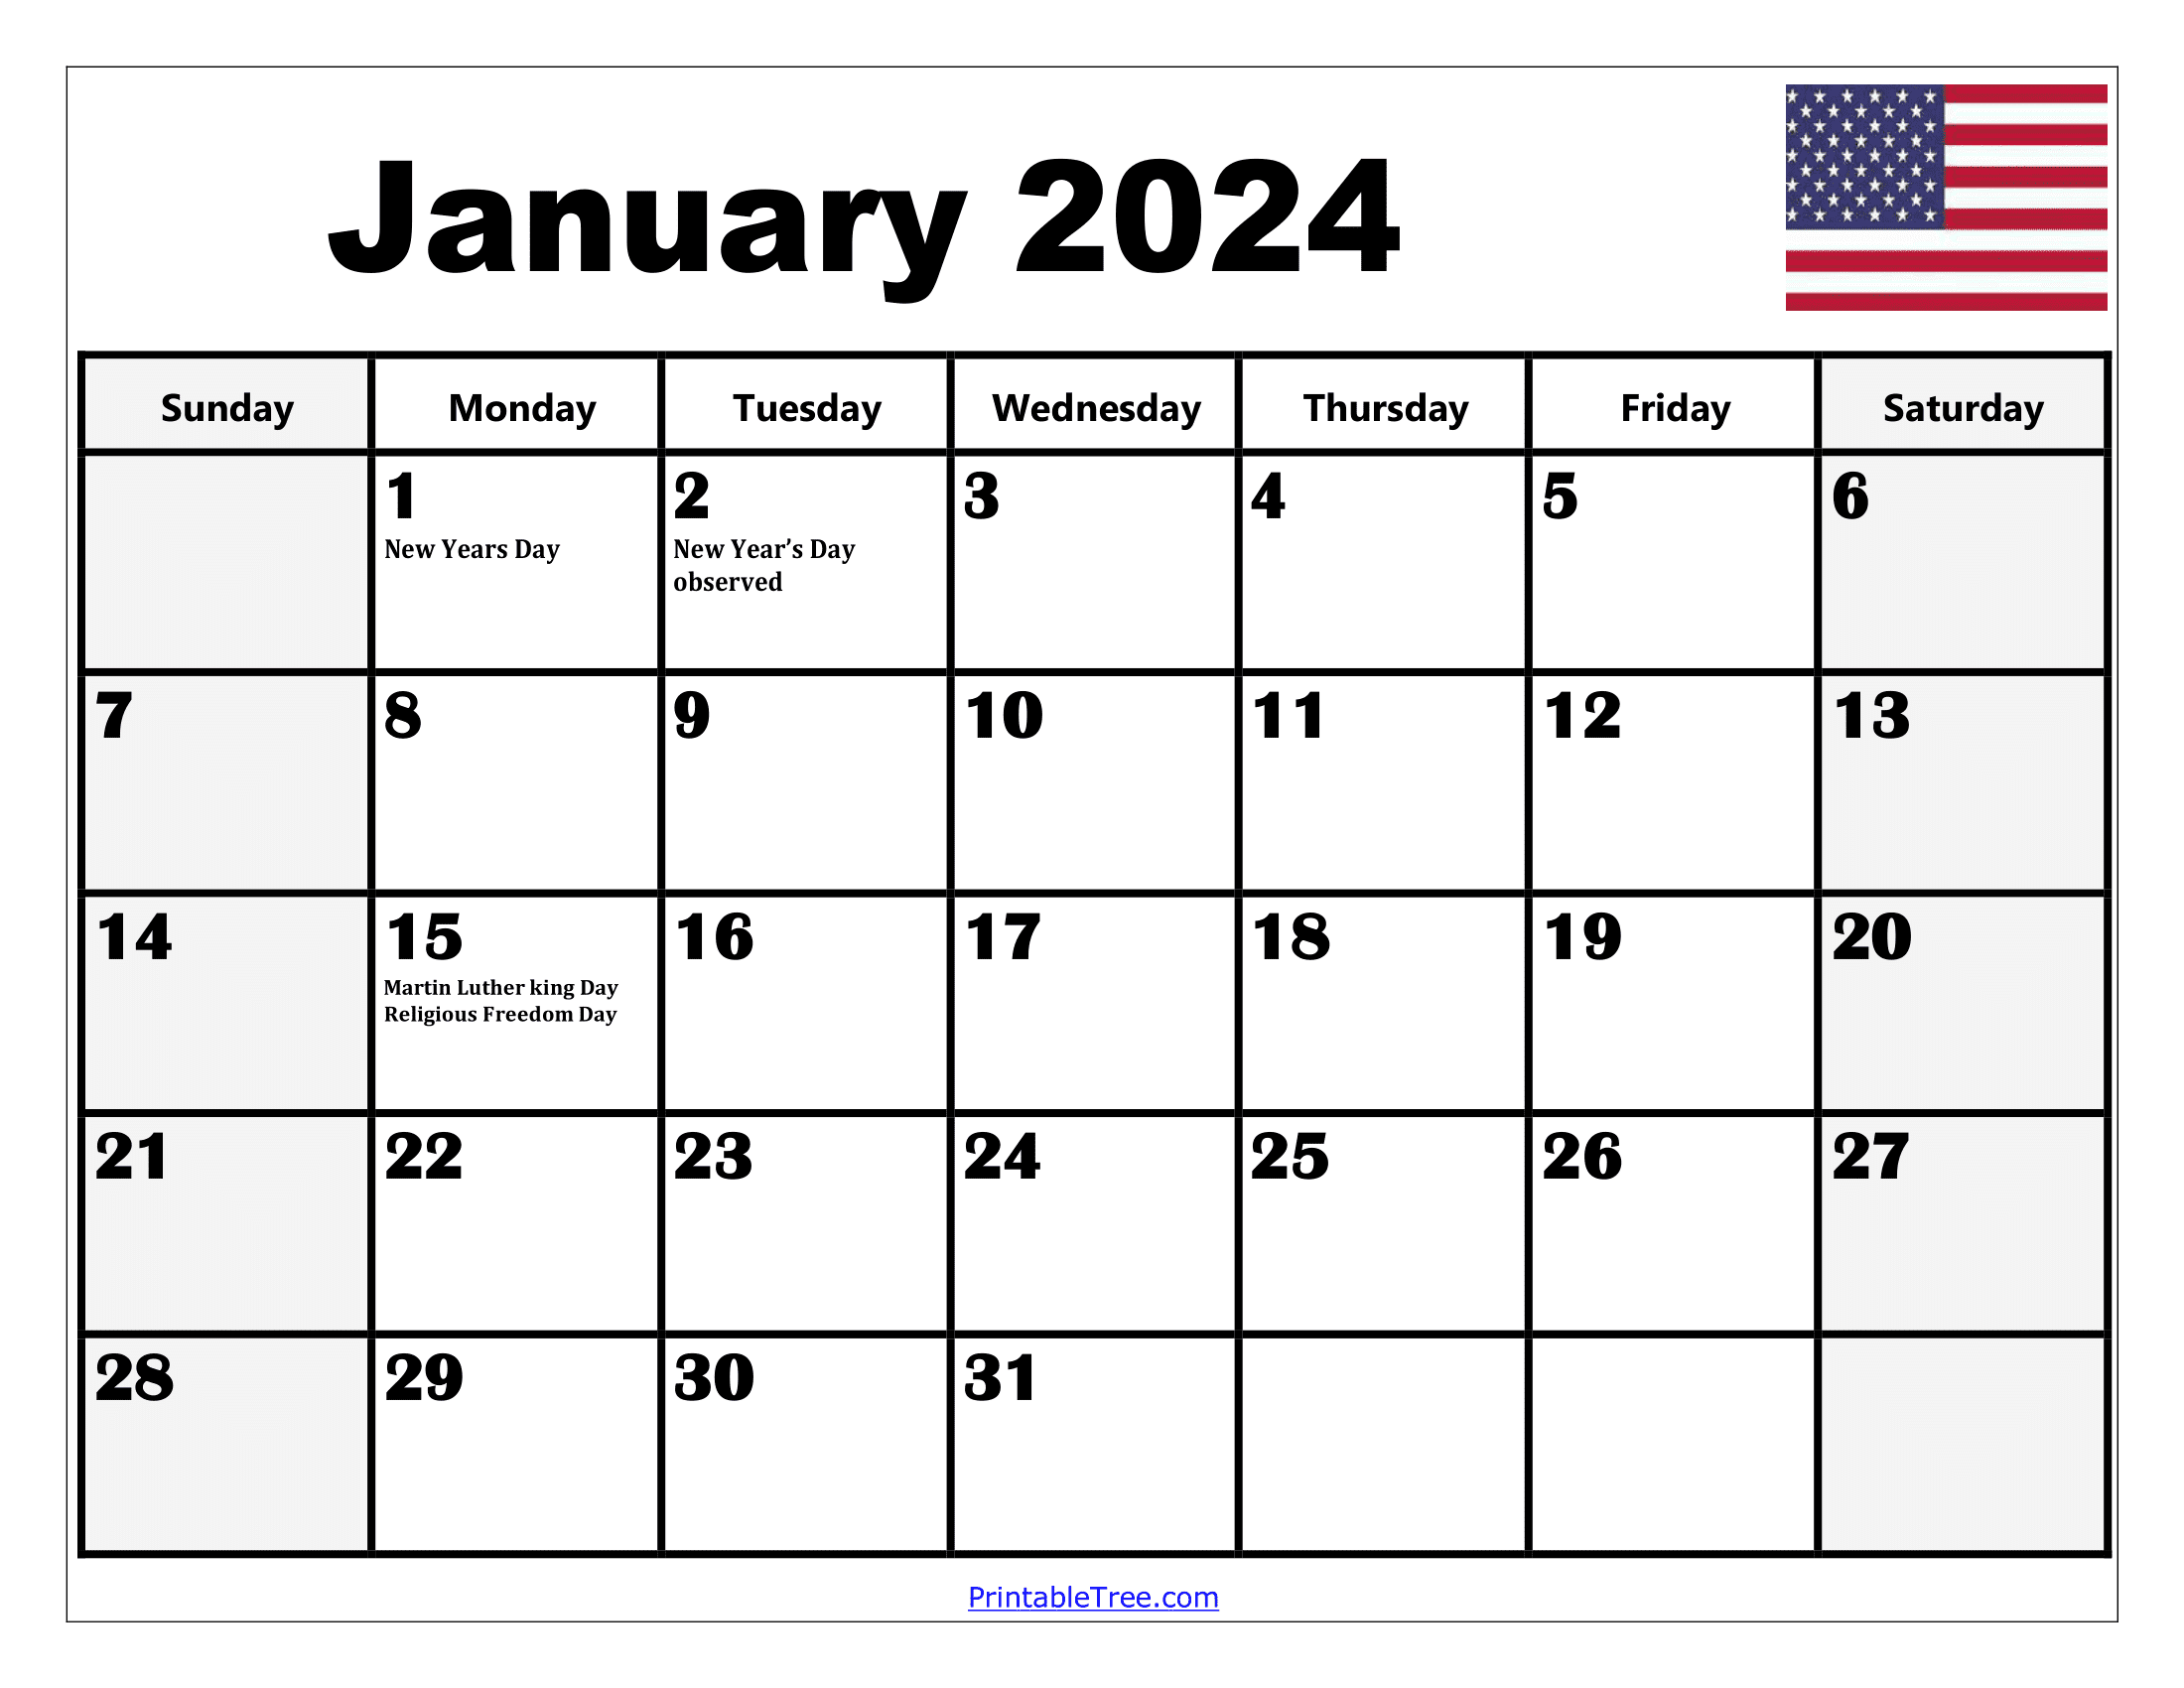 2024 Holiday Calendar Days Free Download Nov 2024 Calendar - Free Printable 2024 Wall Calendar With Holidays